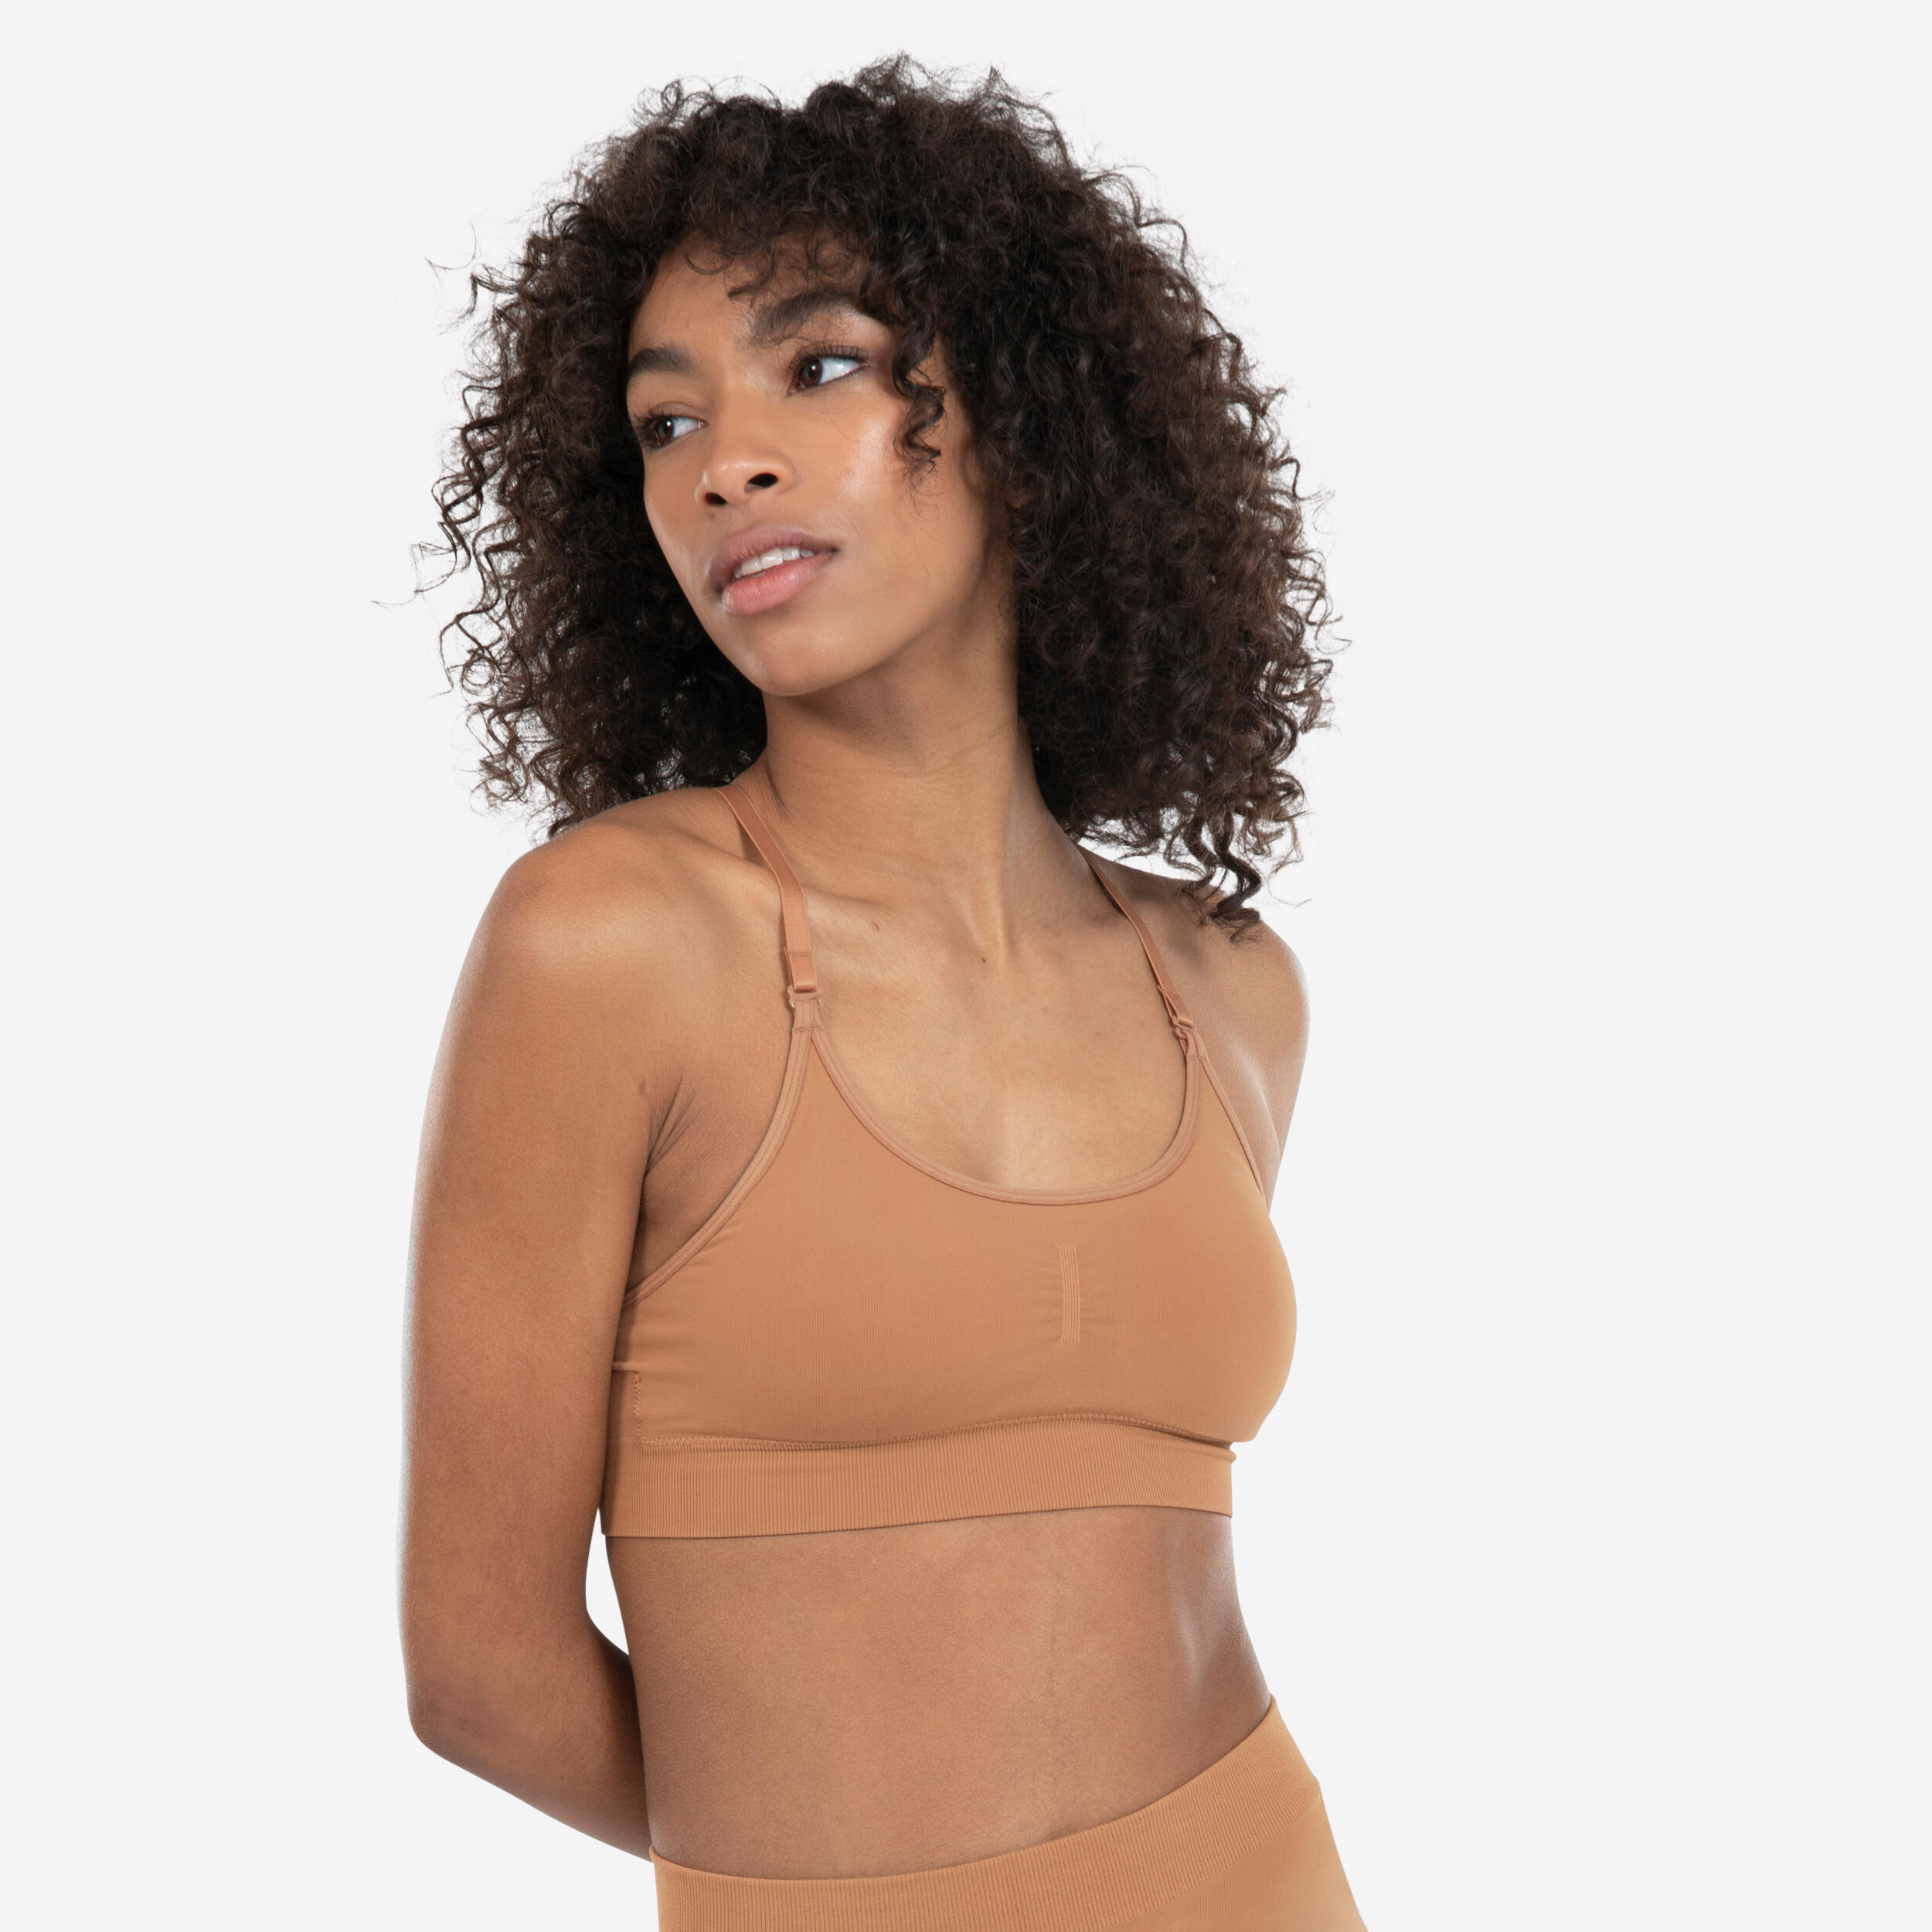 Women's bralette top bras seamless harness